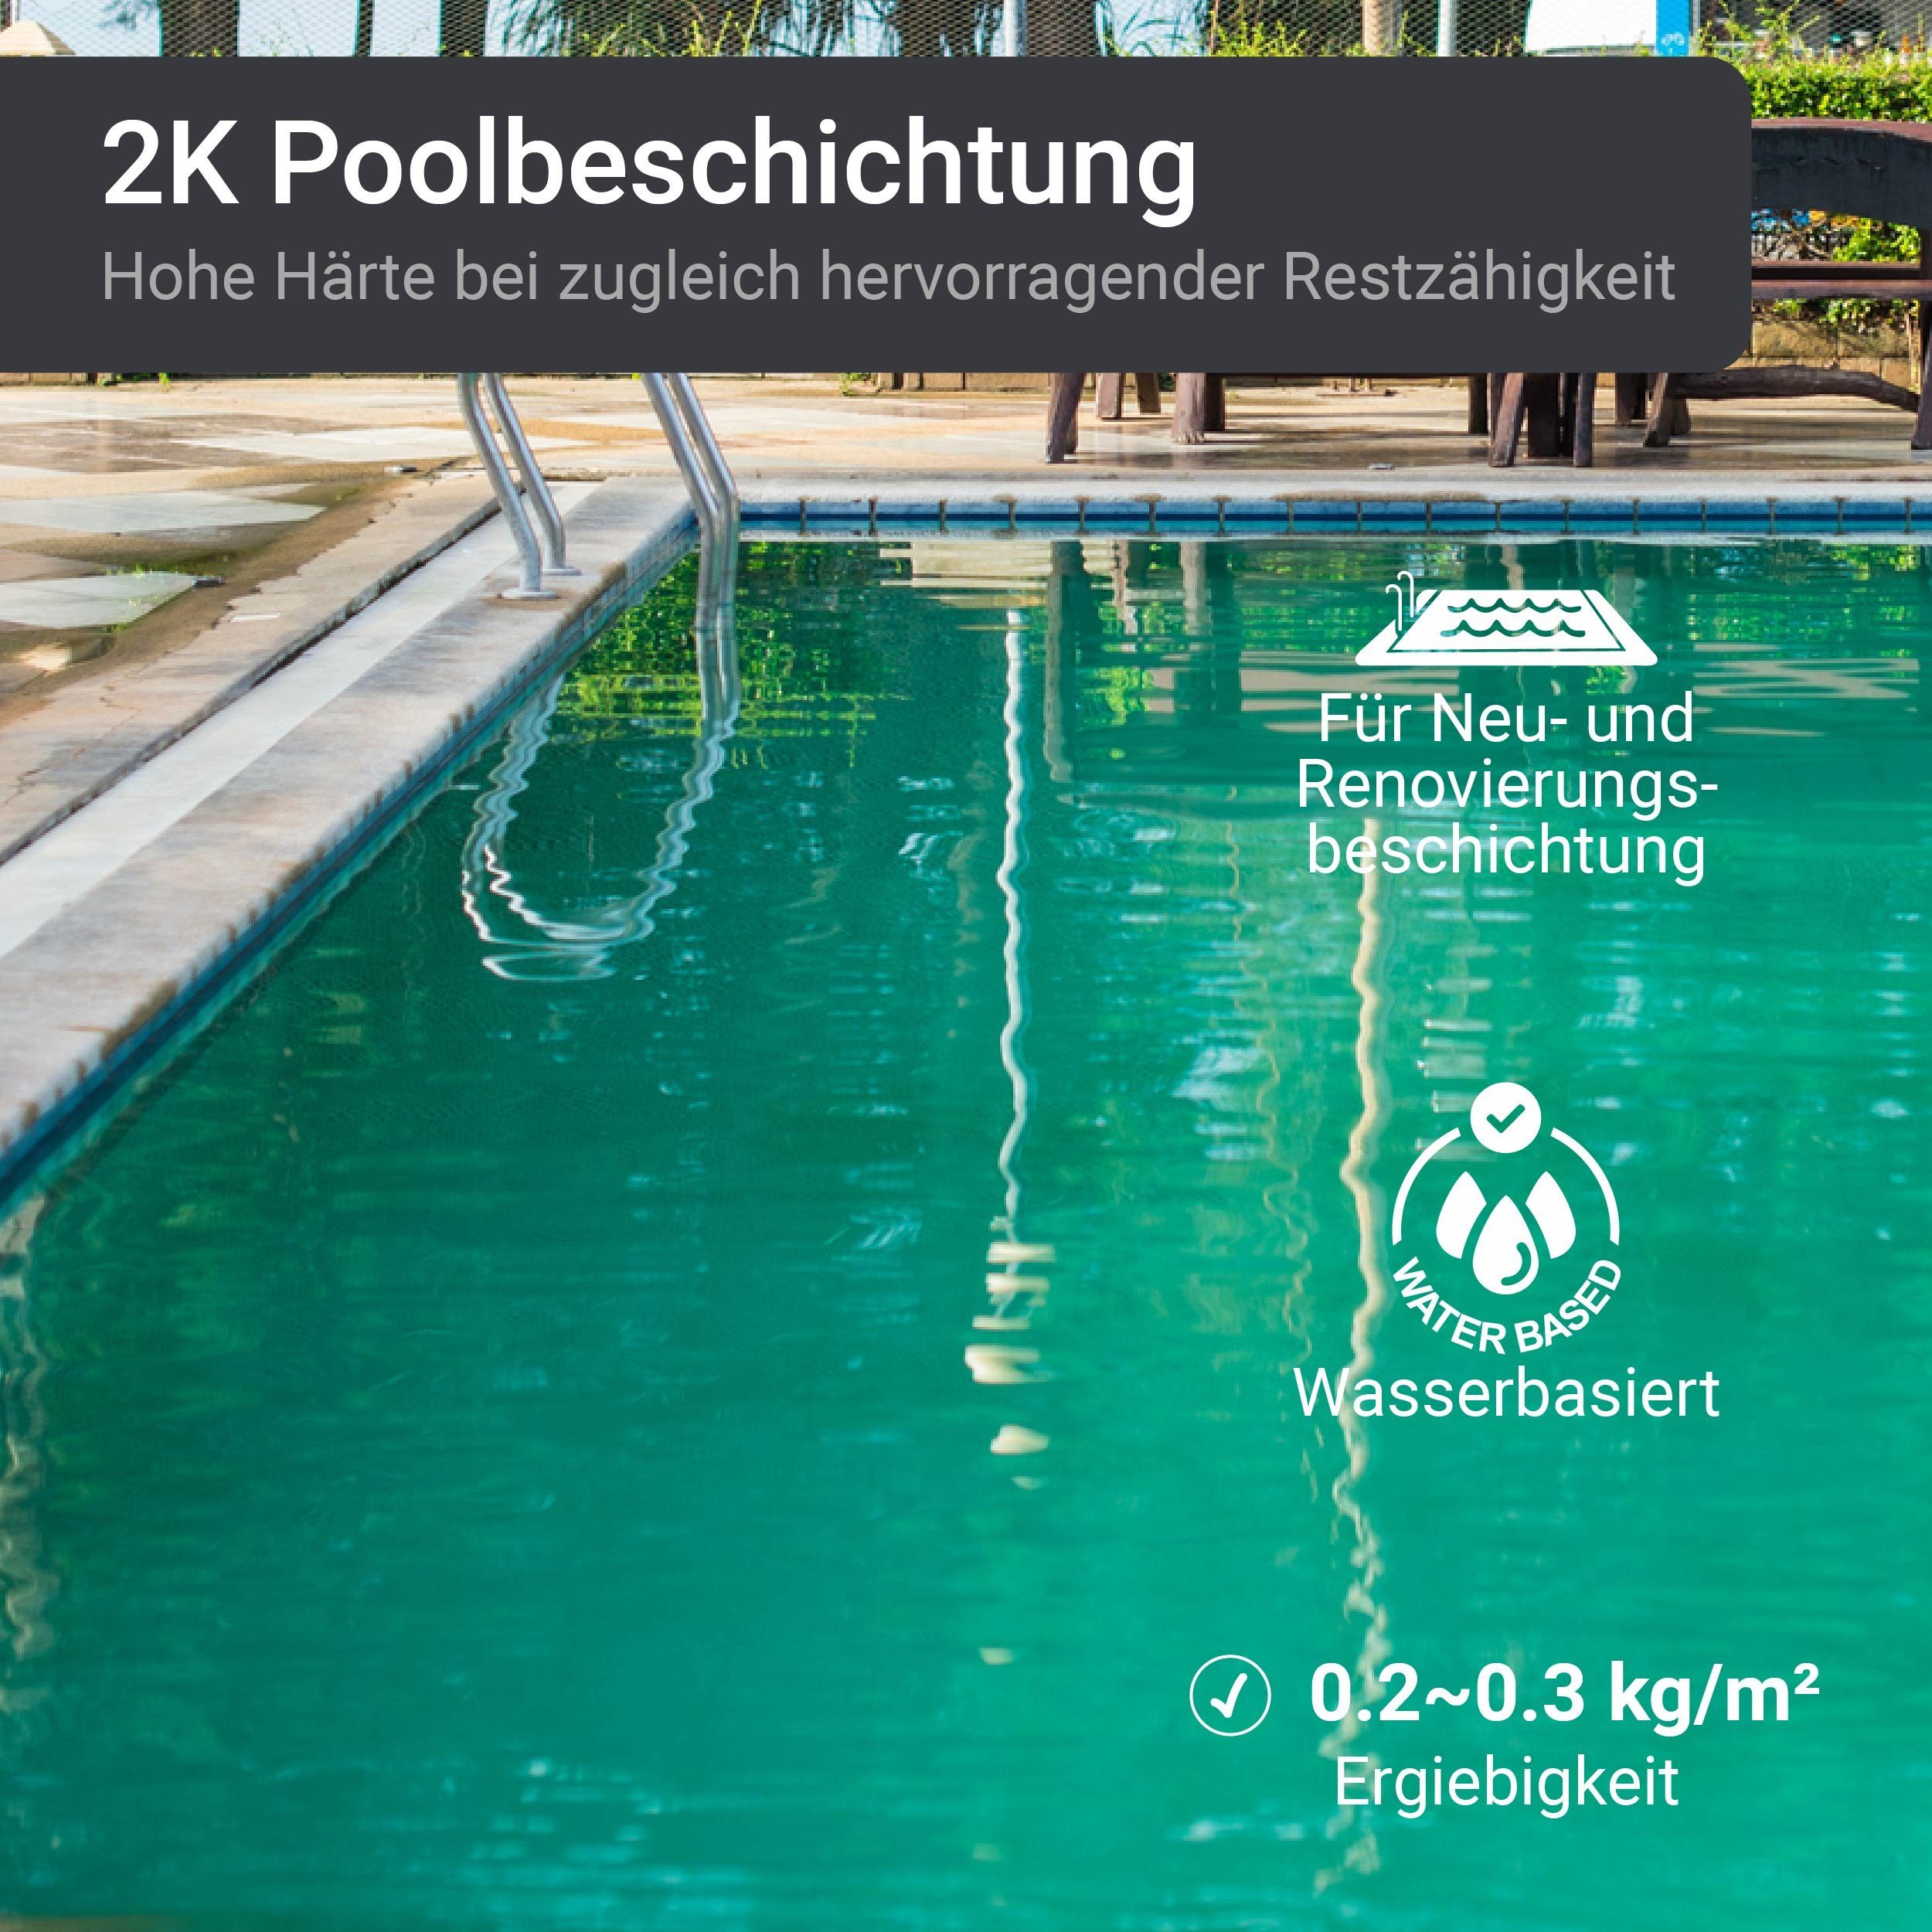 Schwimmbadfarbe WO-WE 5012 SL450, Poolbeschichtung RAL Poolfarbe 2K Seidenglänzend, Lack Lichtblau Epoxidharz 2,5-20Kg,